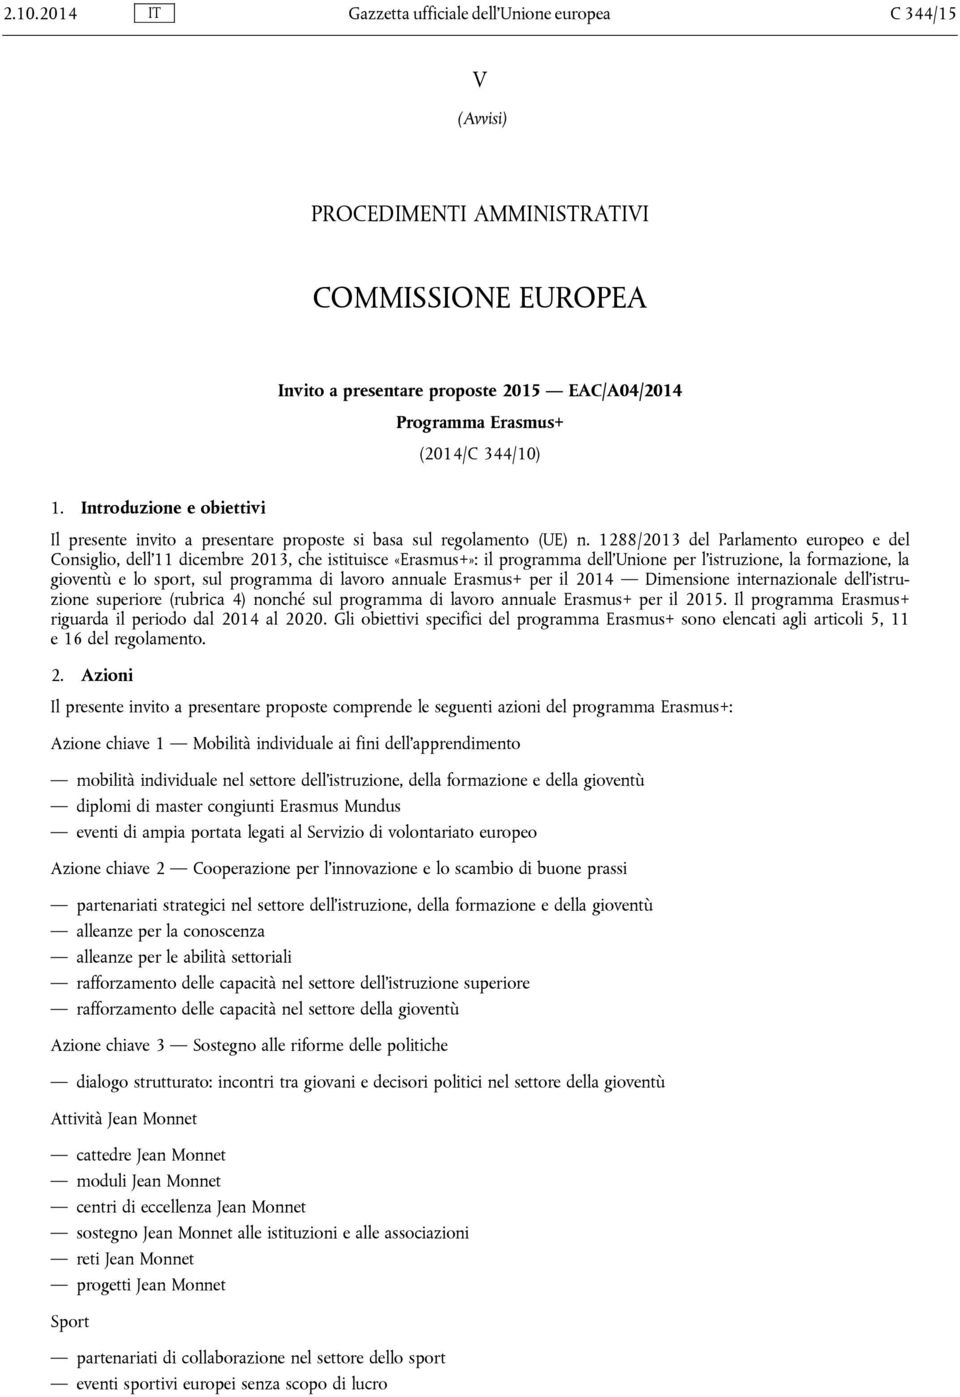 1288/2013 del Parlamento europeo e del Consiglio, dell'11 dicembre 2013, che istituisce «Erasmus+»: il programma dell'unione per l'istruzione, la formazione, la gioventù e lo sport, sul programma di